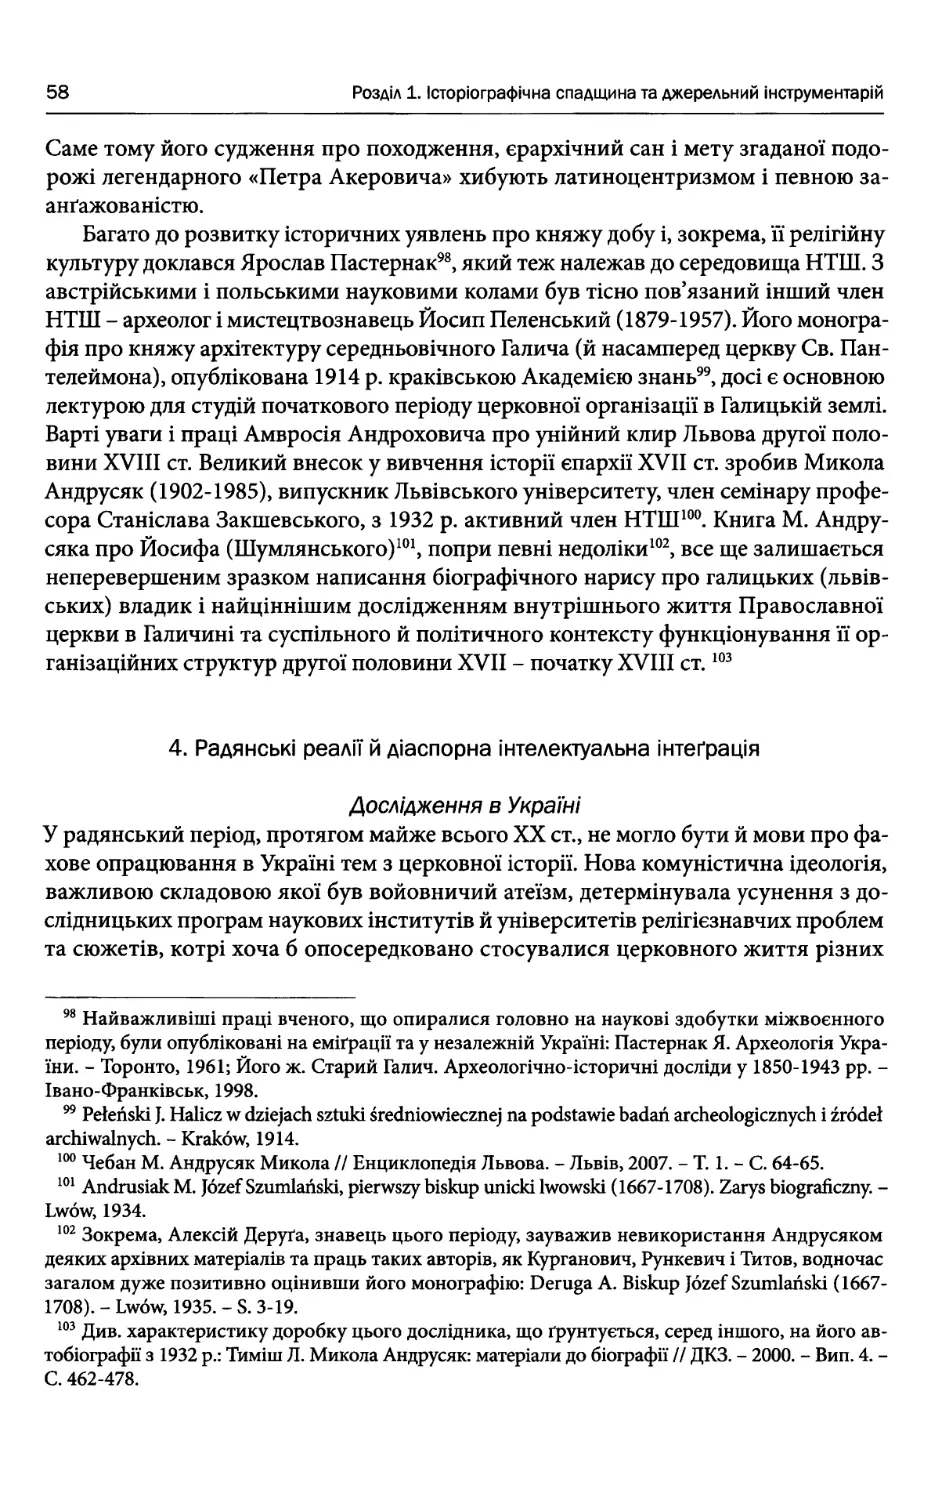 4. Радянські реалії й діаспорна інтелектуальна інтеграція